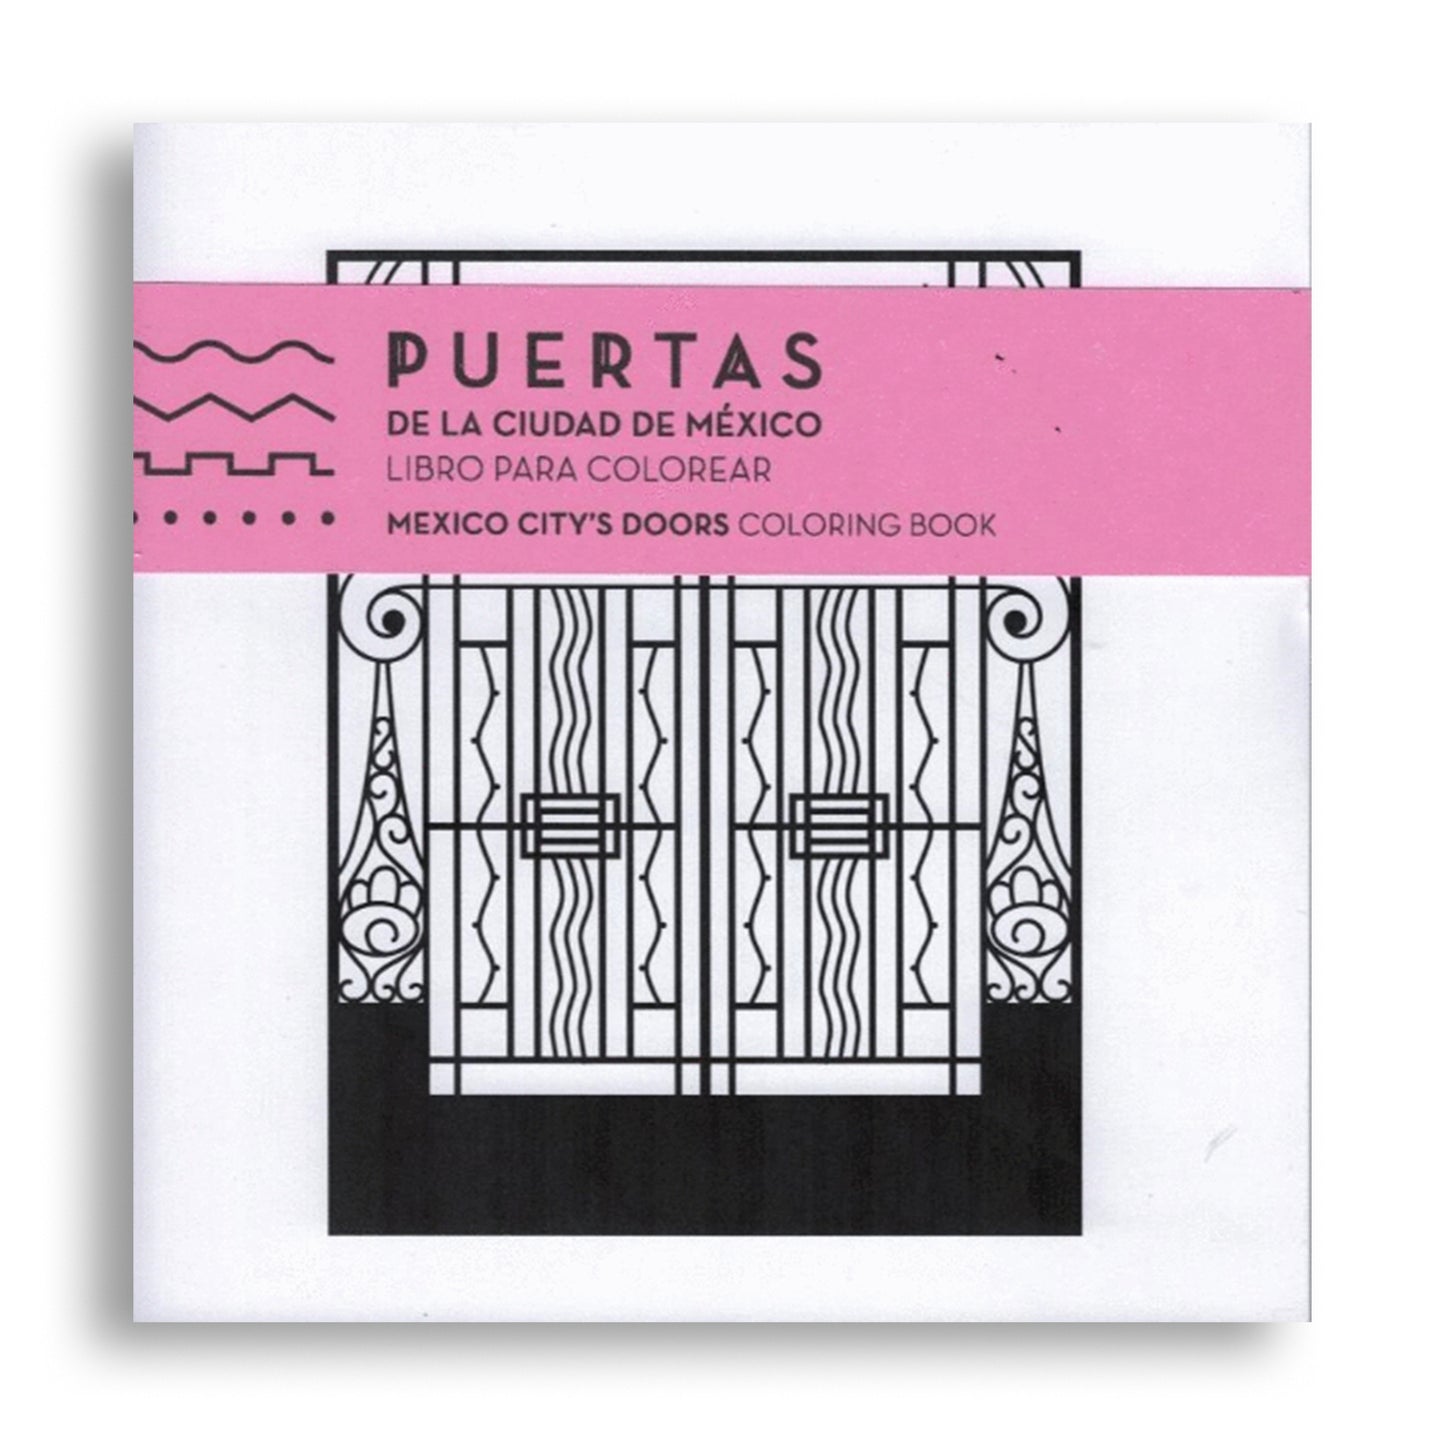 Puertas de la ciudad de méxico: Libro para colorear